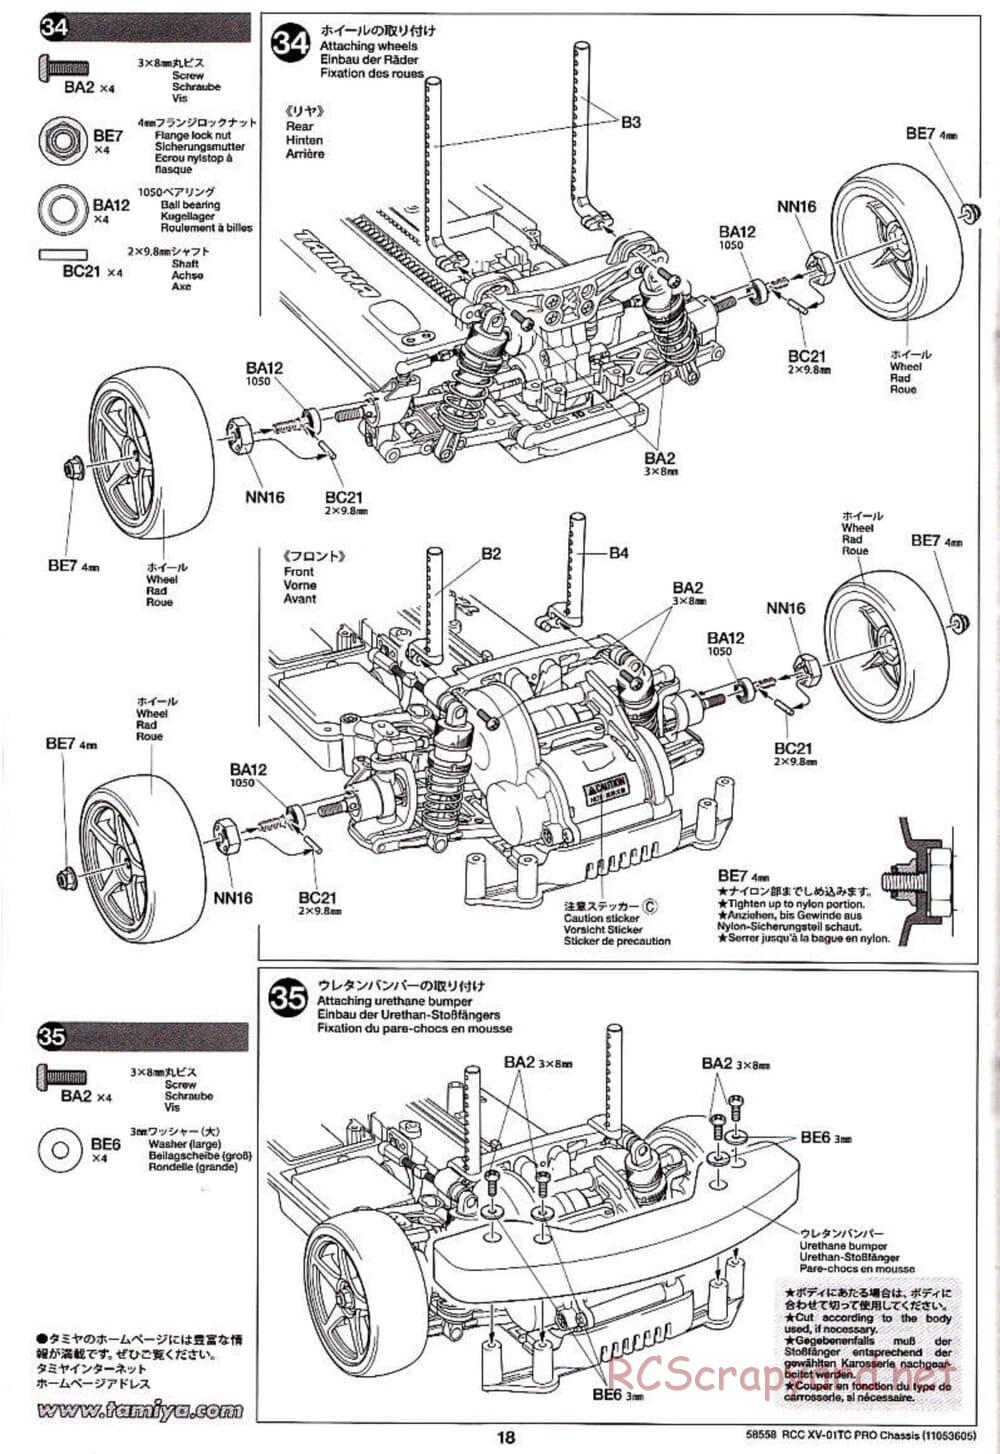 Tamiya - XV-01TC Chassis - Manual - Page 18